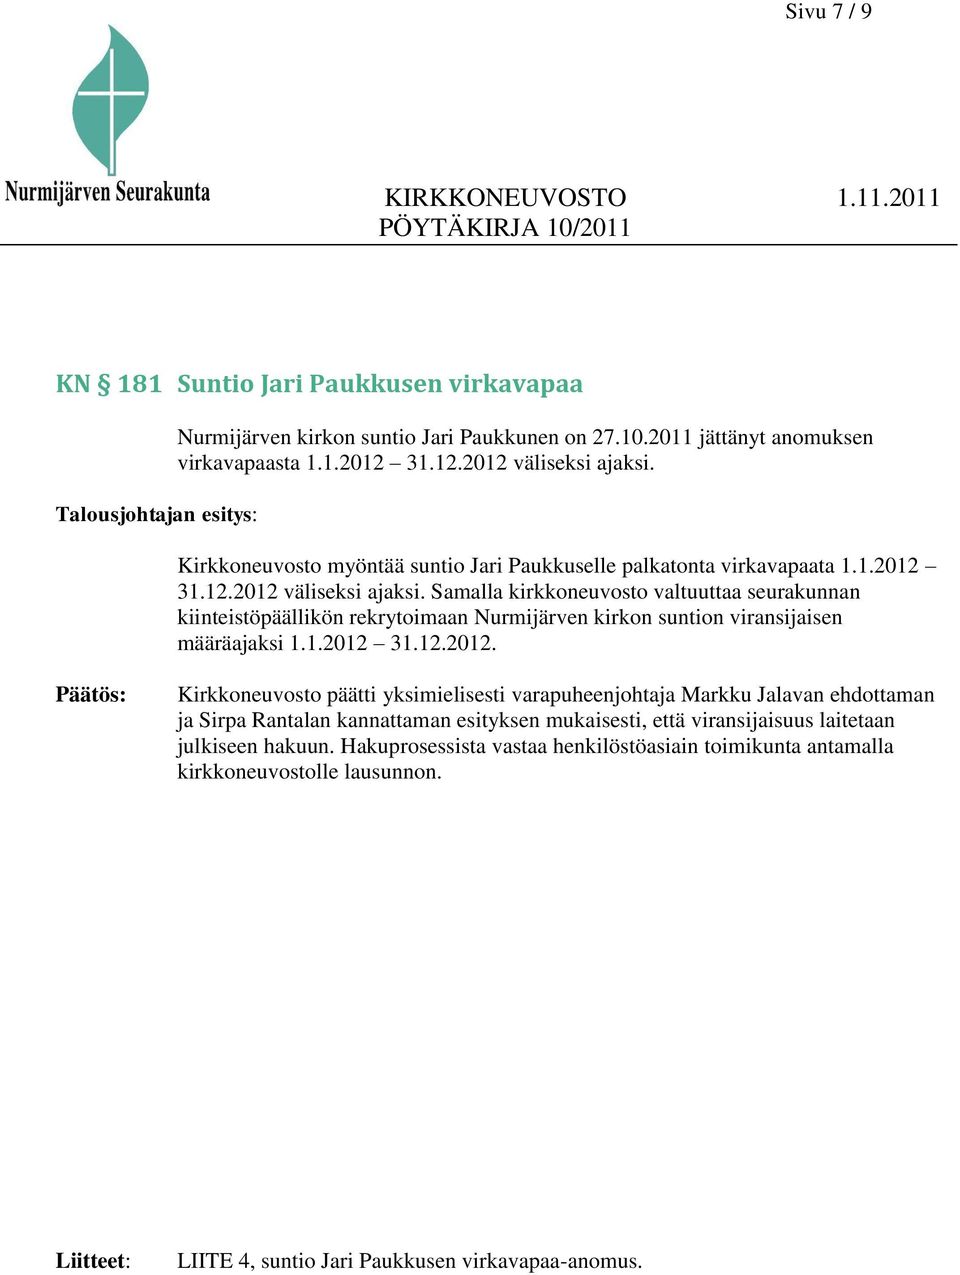 Samalla kirkkoneuvosto valtuuttaa seurakunnan kiinteistöpäällikön rekrytoimaan Nurmijärven kirkon suntion viransijaisen määräajaksi 1.1.2012 